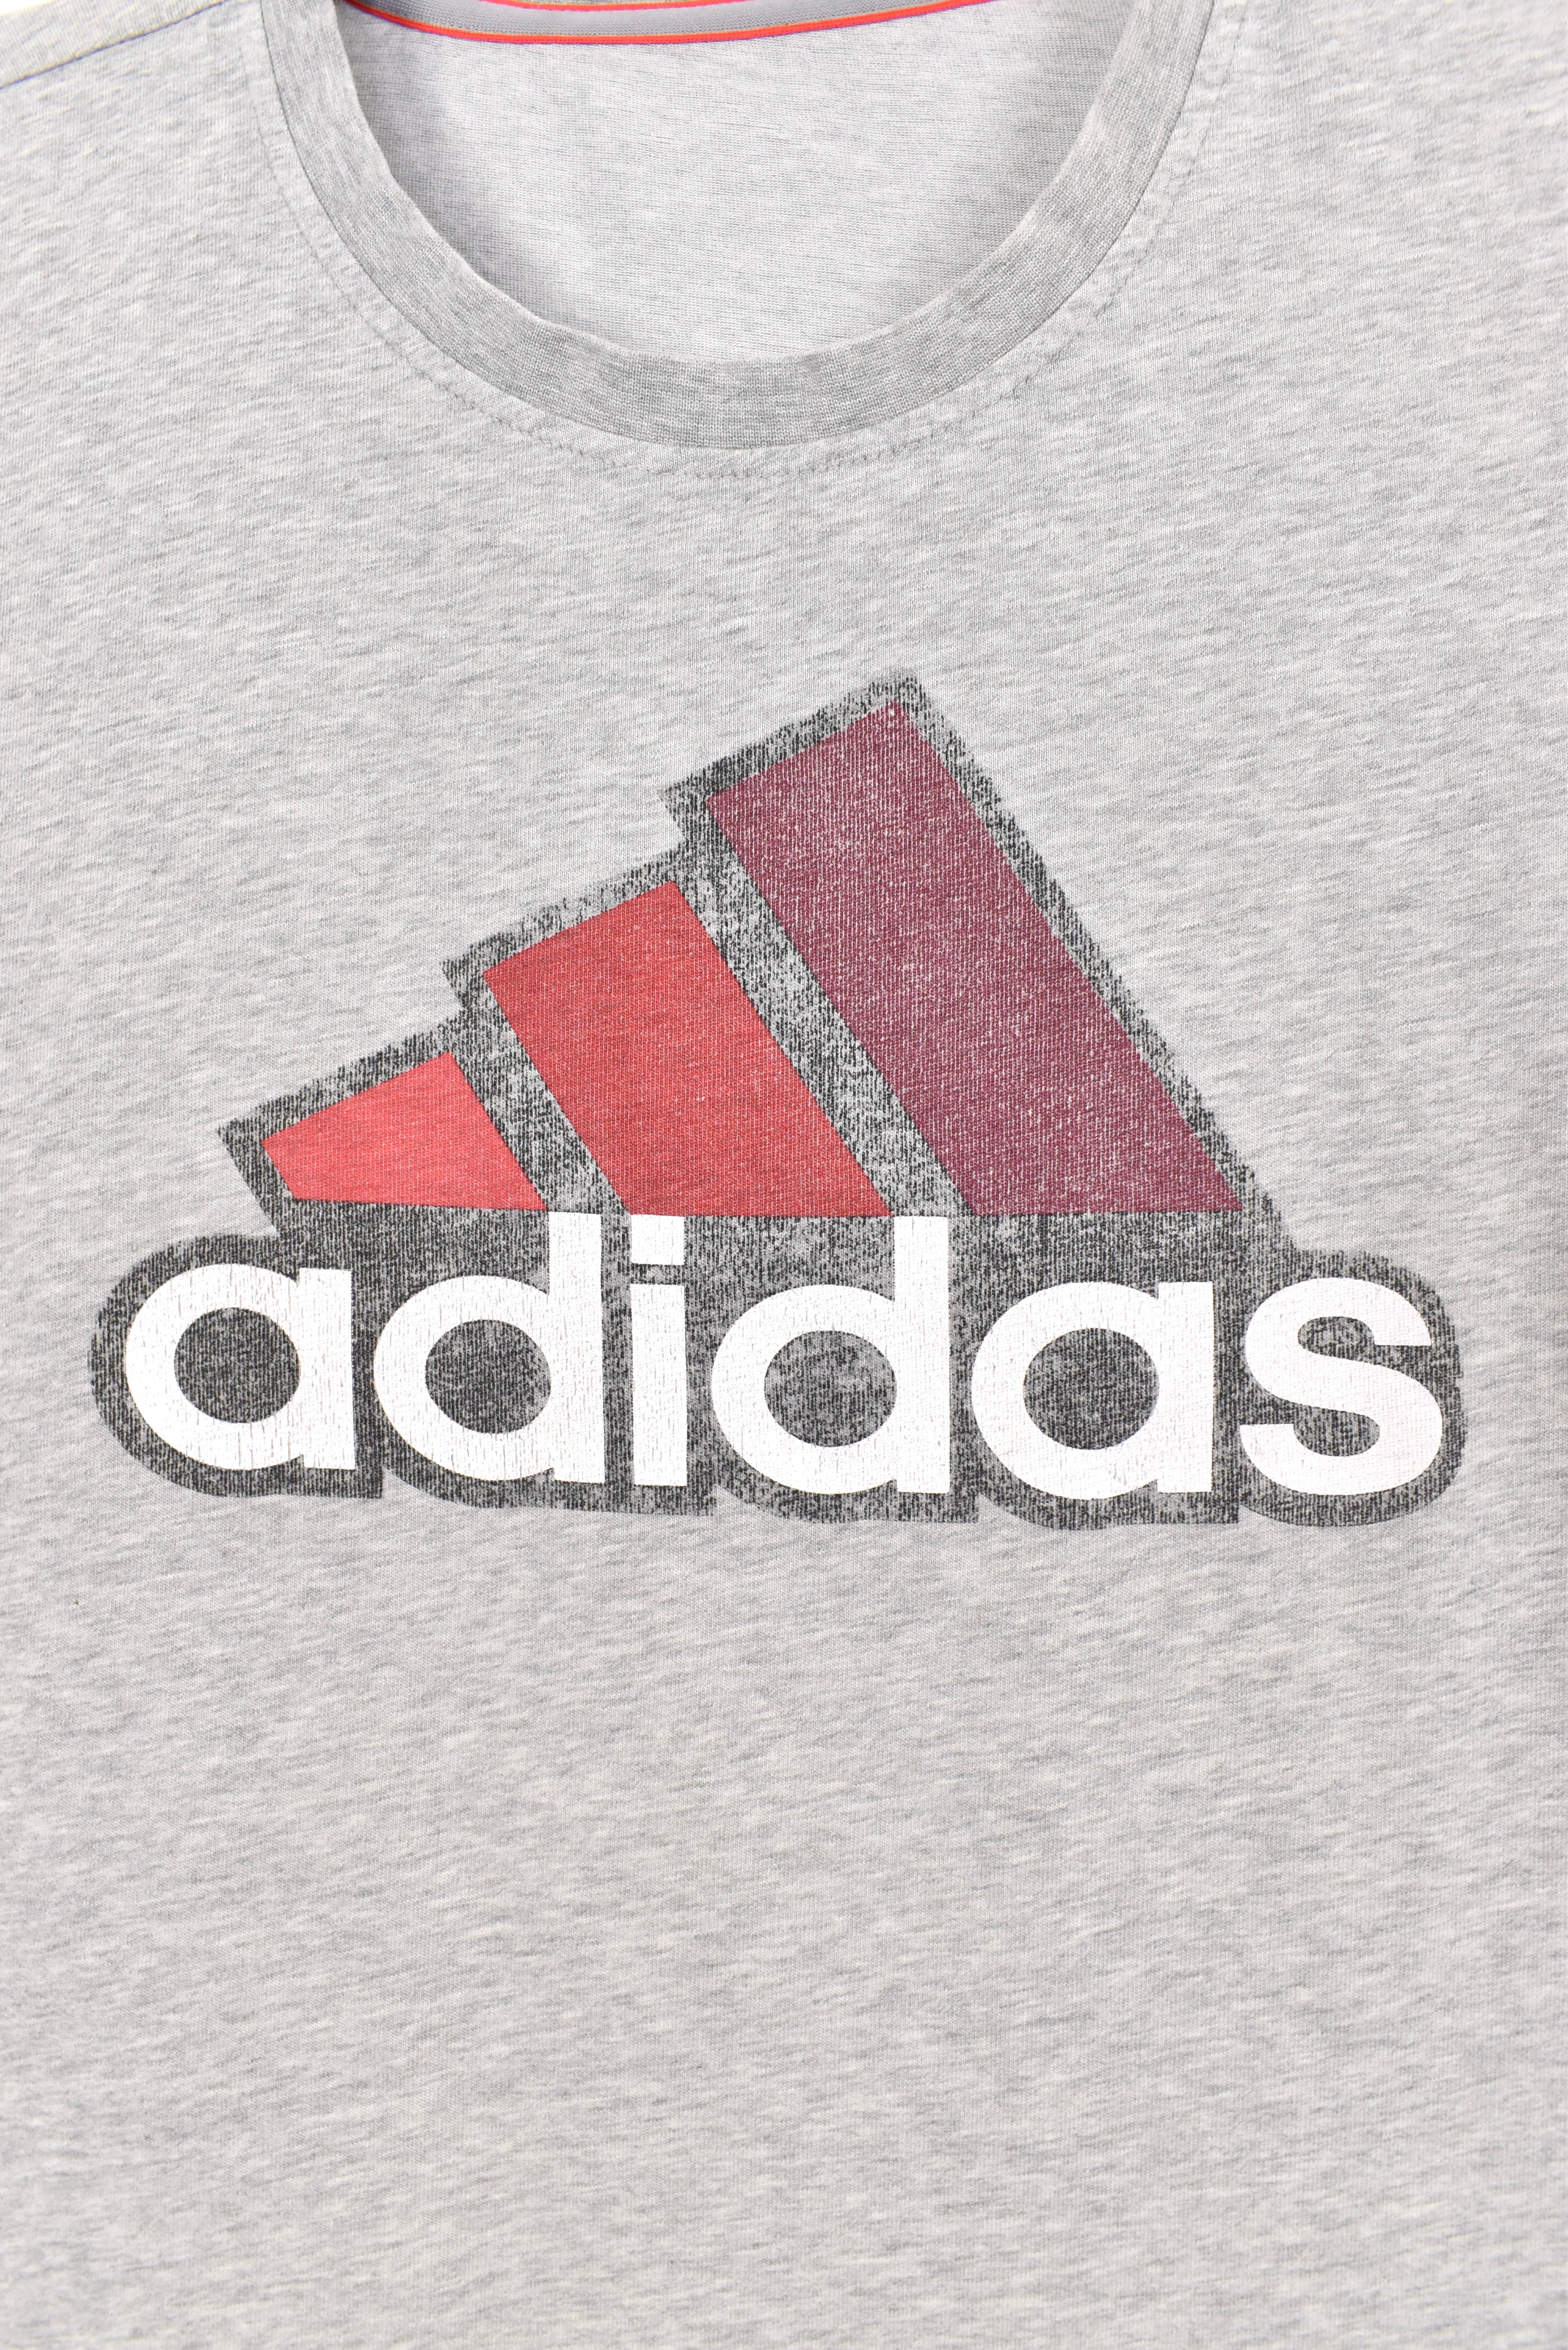 Modern Adidas shirt, athletic grey graphic tee - AU Medium ADIDAS